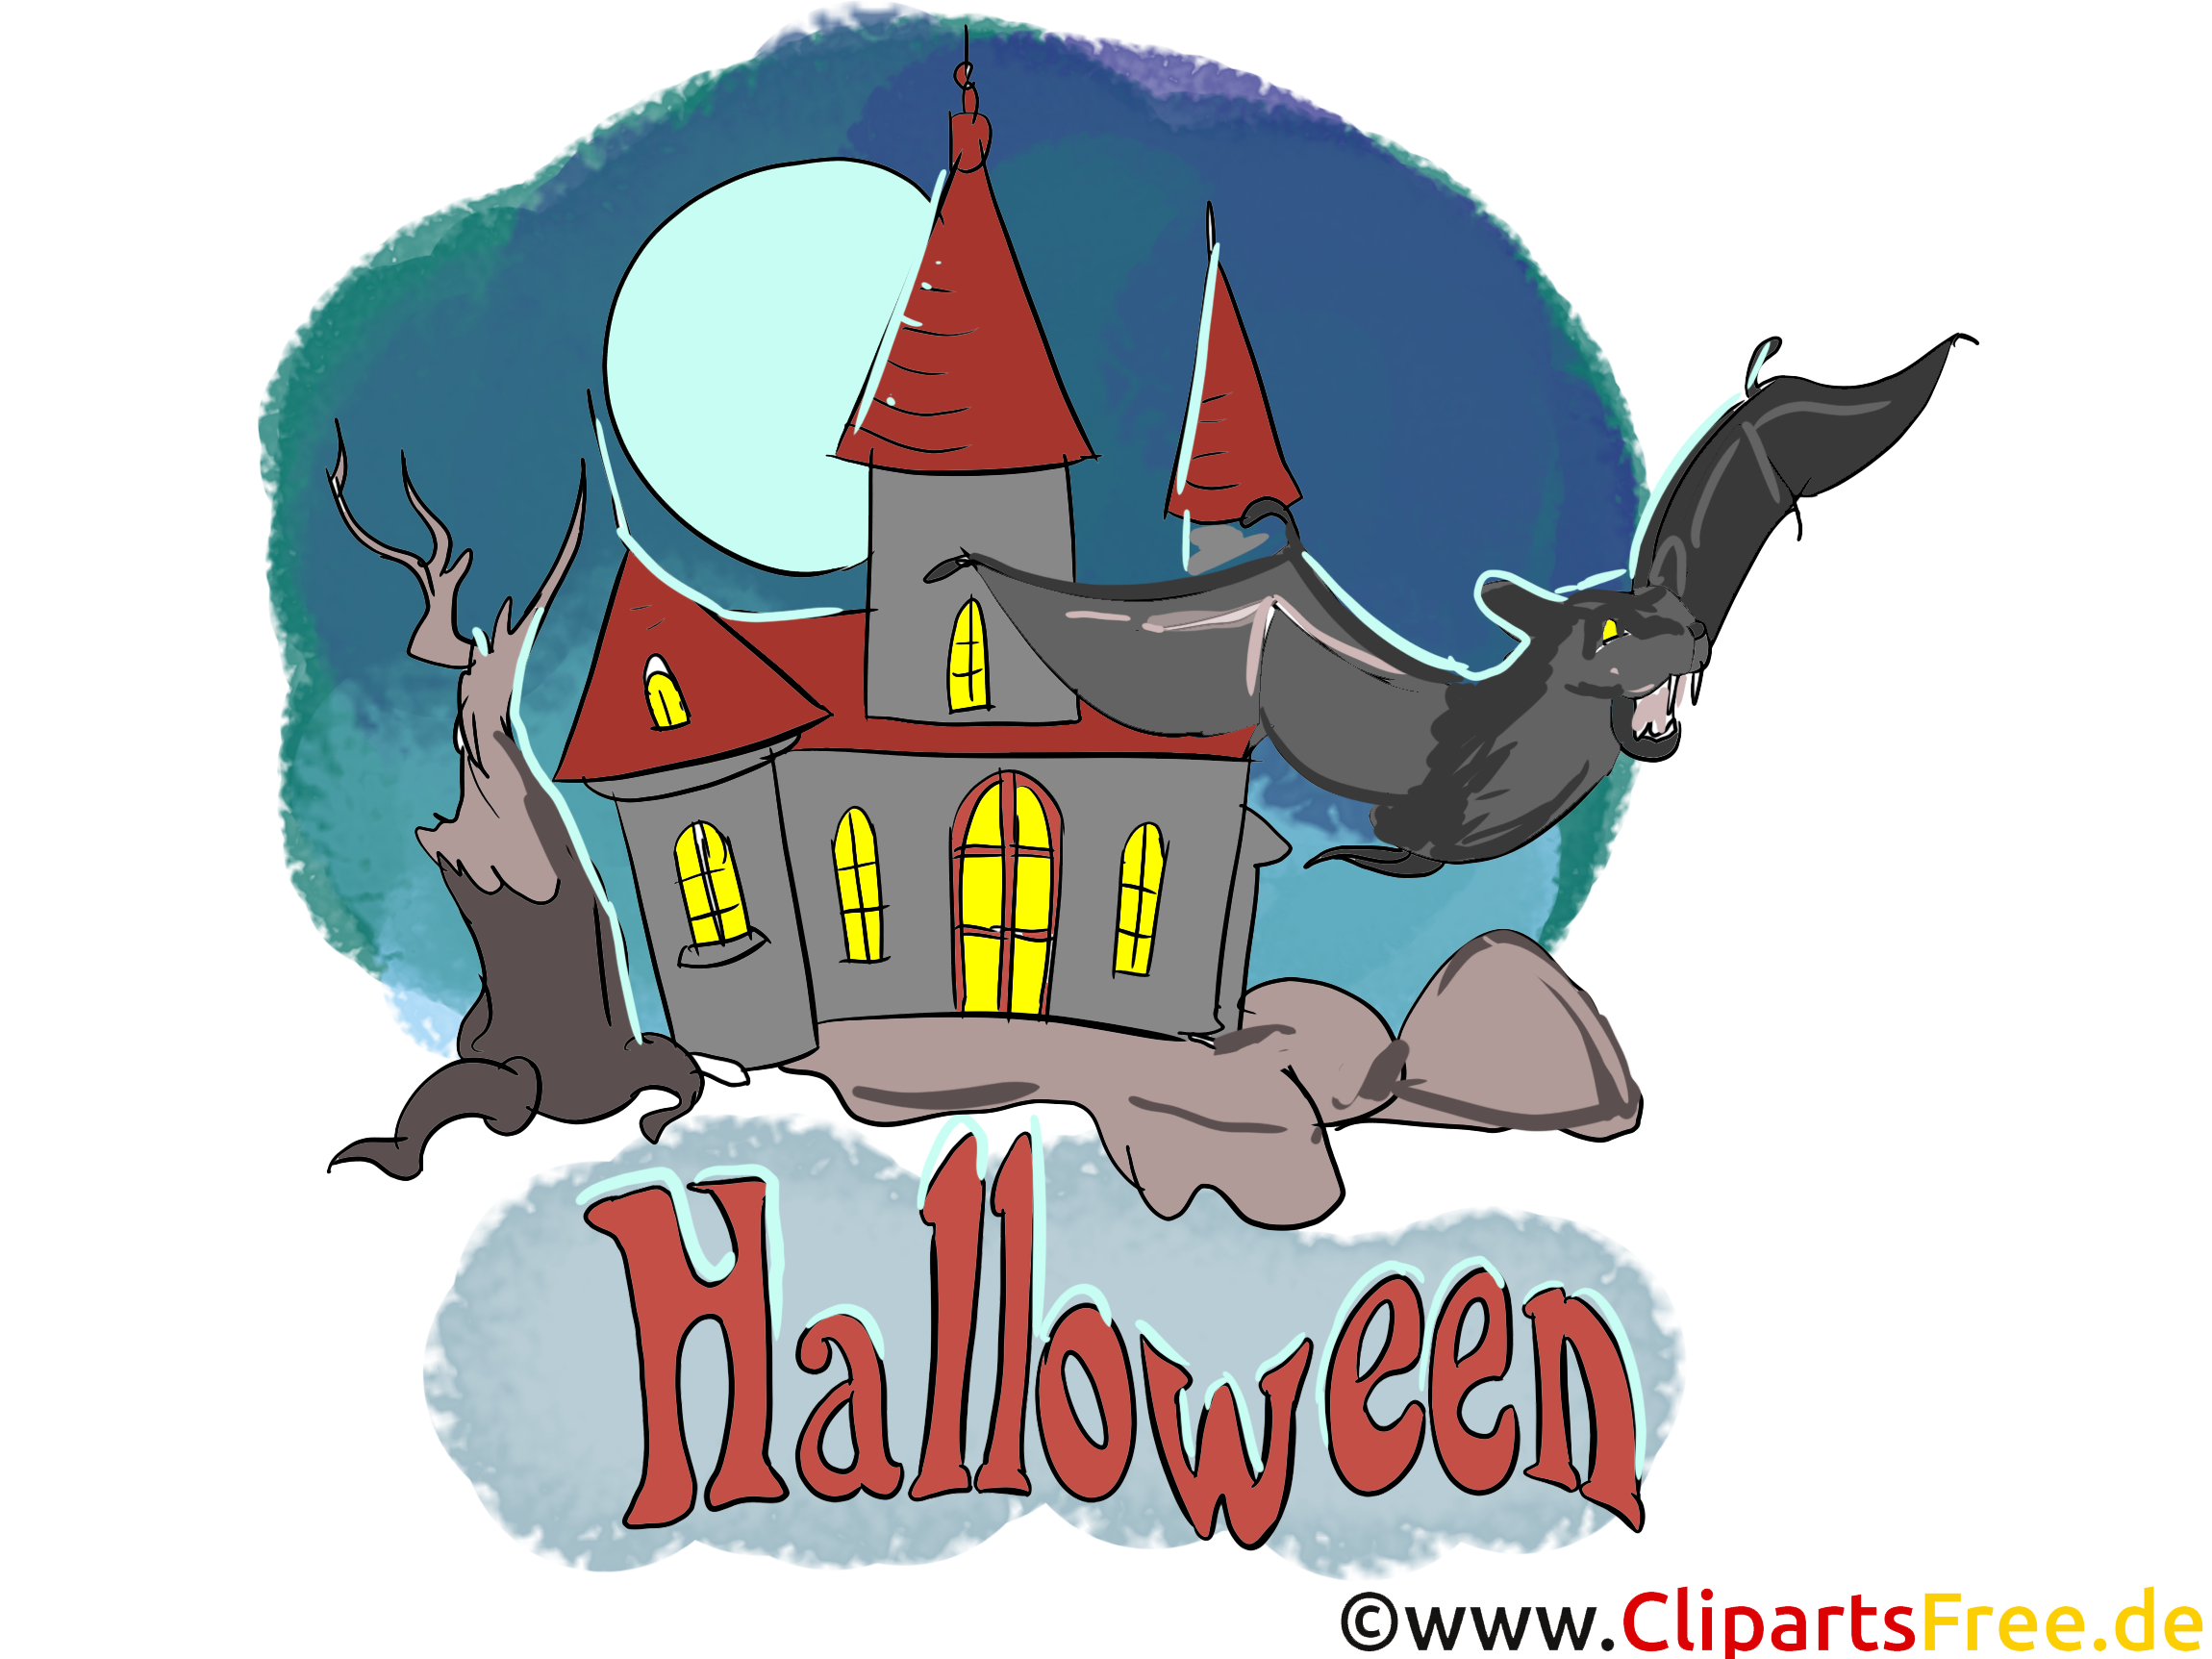 Chauve-souris images - Halloween dessins gratuits